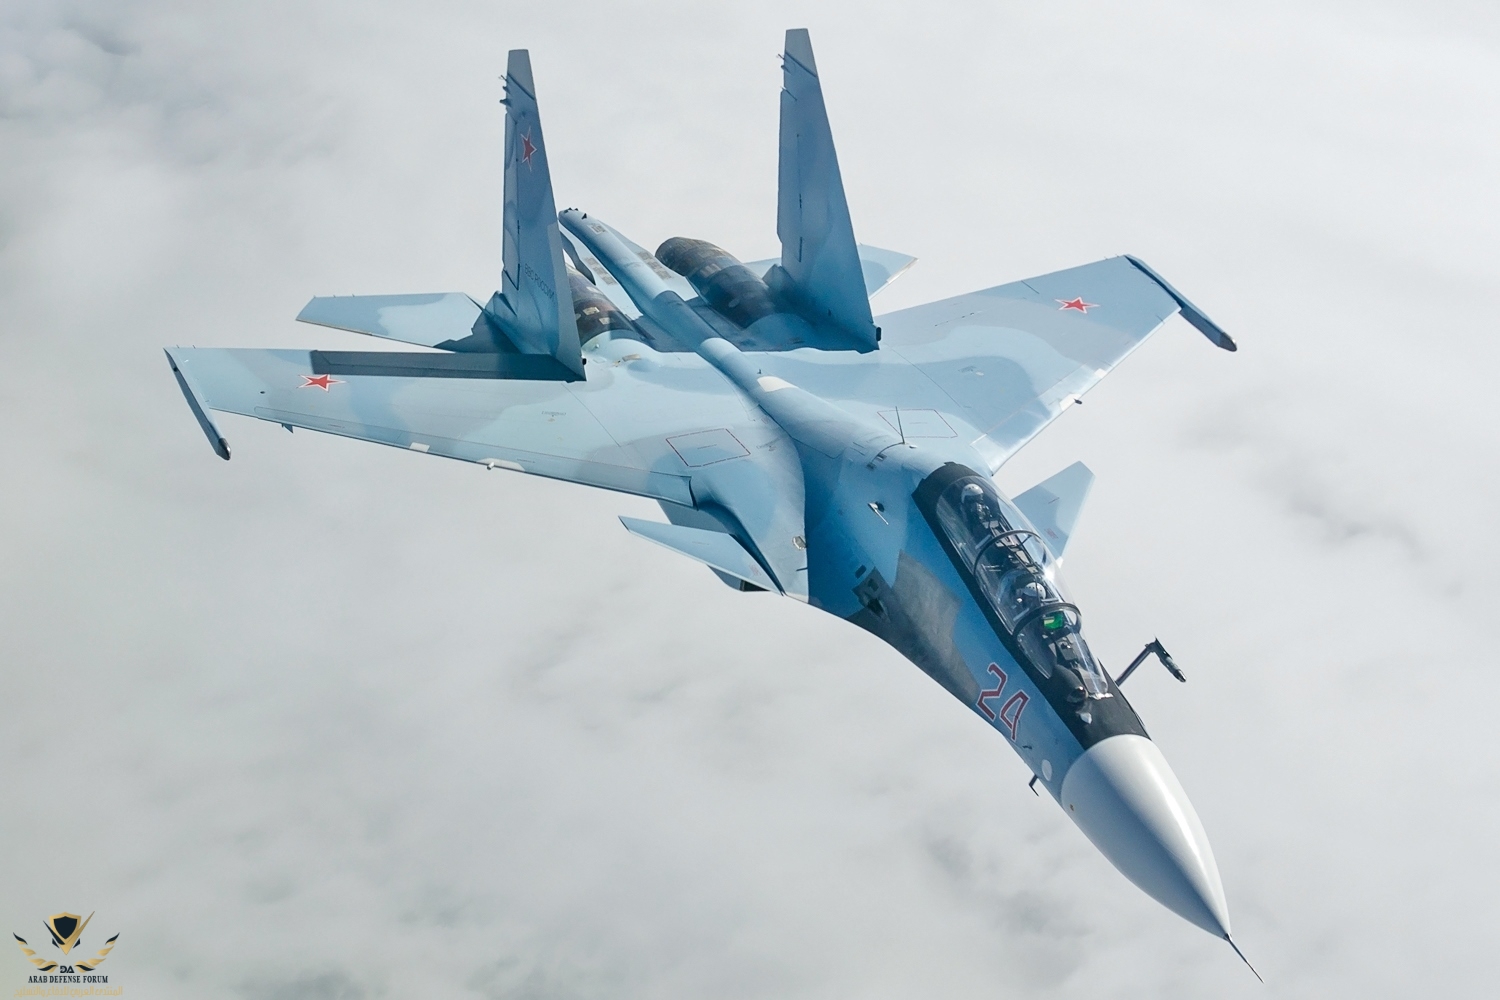 Sukhoi_Su-30SM_in_flight_2014.jpg